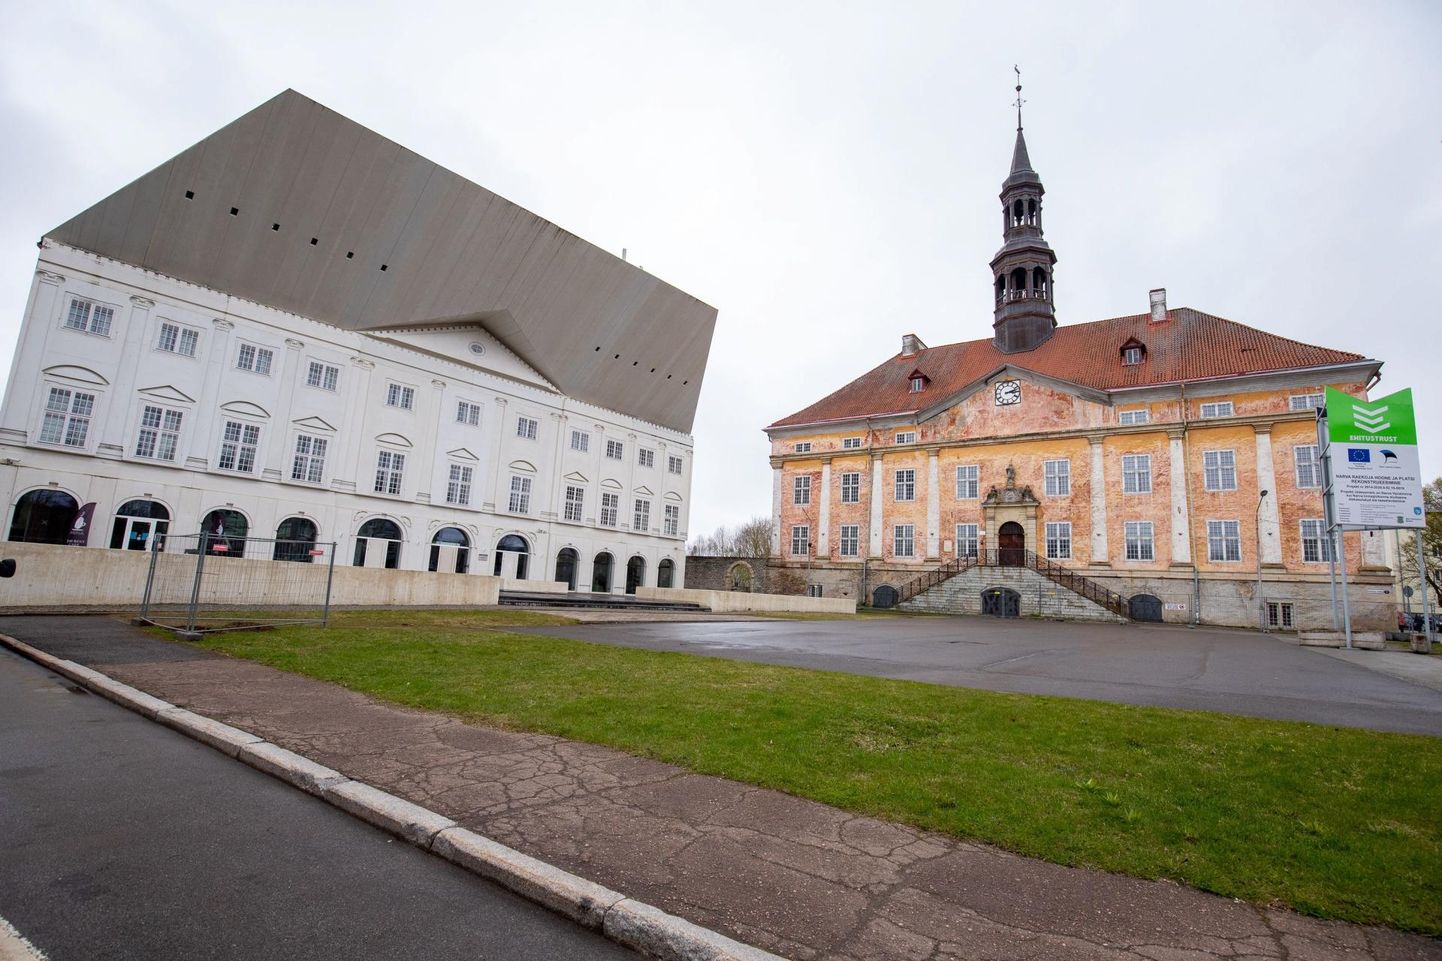 Enam kui pool Tartu Ülikooli eesti keeles õppivatest välistudengitest õpib Narvas. Euroopa hariduse nimel peavad nad piirilinnas vähemuskeeleks oleva riigikeele ära õppima.